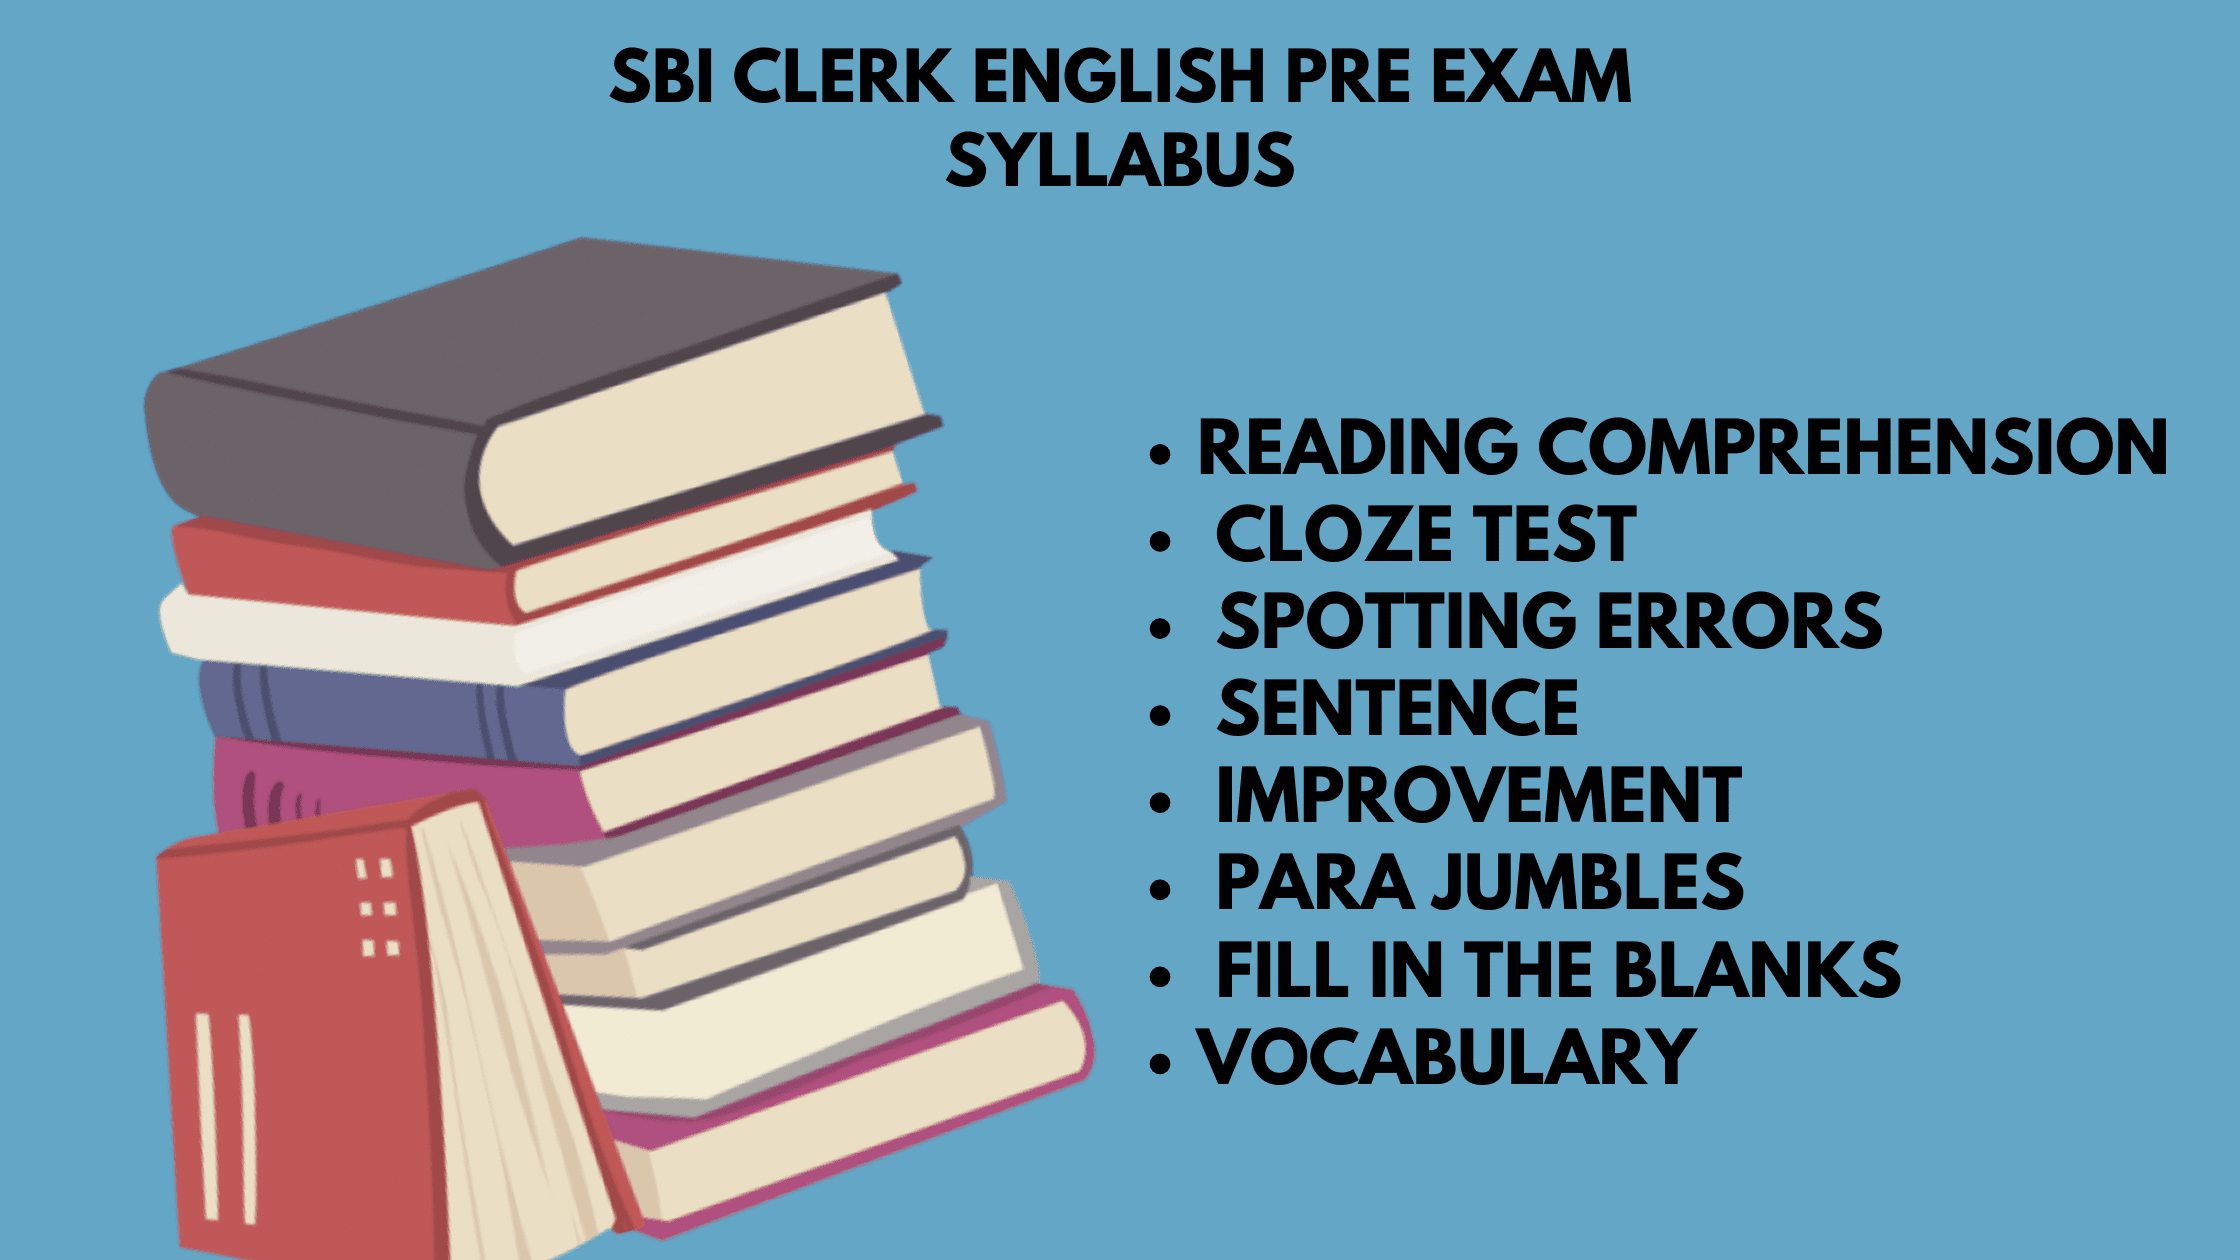 SBI clerk English pre exam syllabus